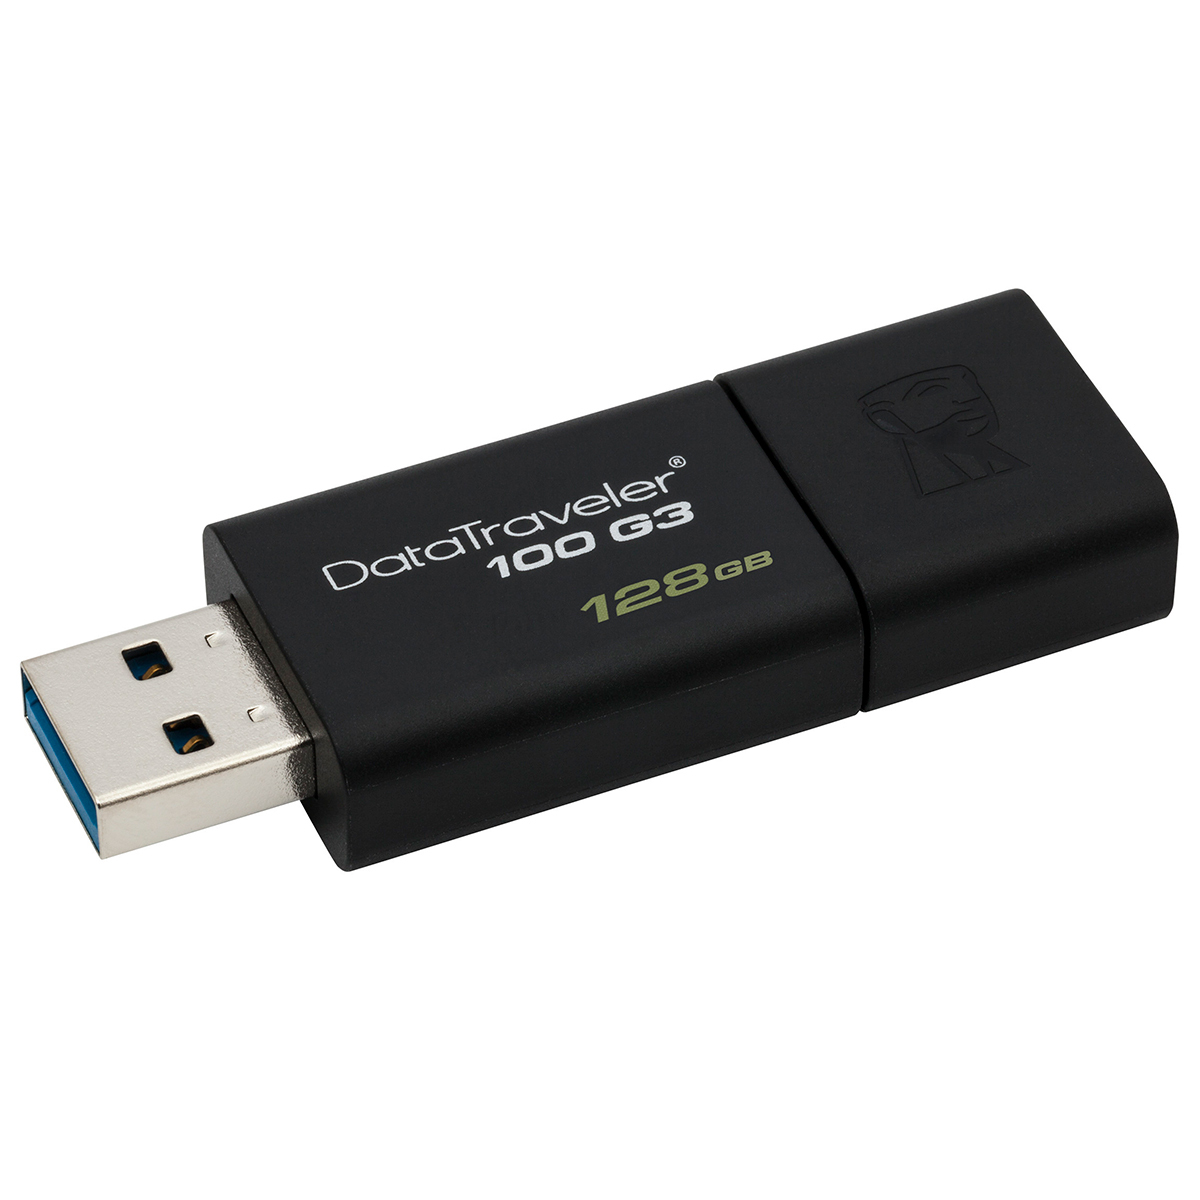 Memoria USB Kingston DataTraveler 100 G3 128gb USB 3.0 Negro